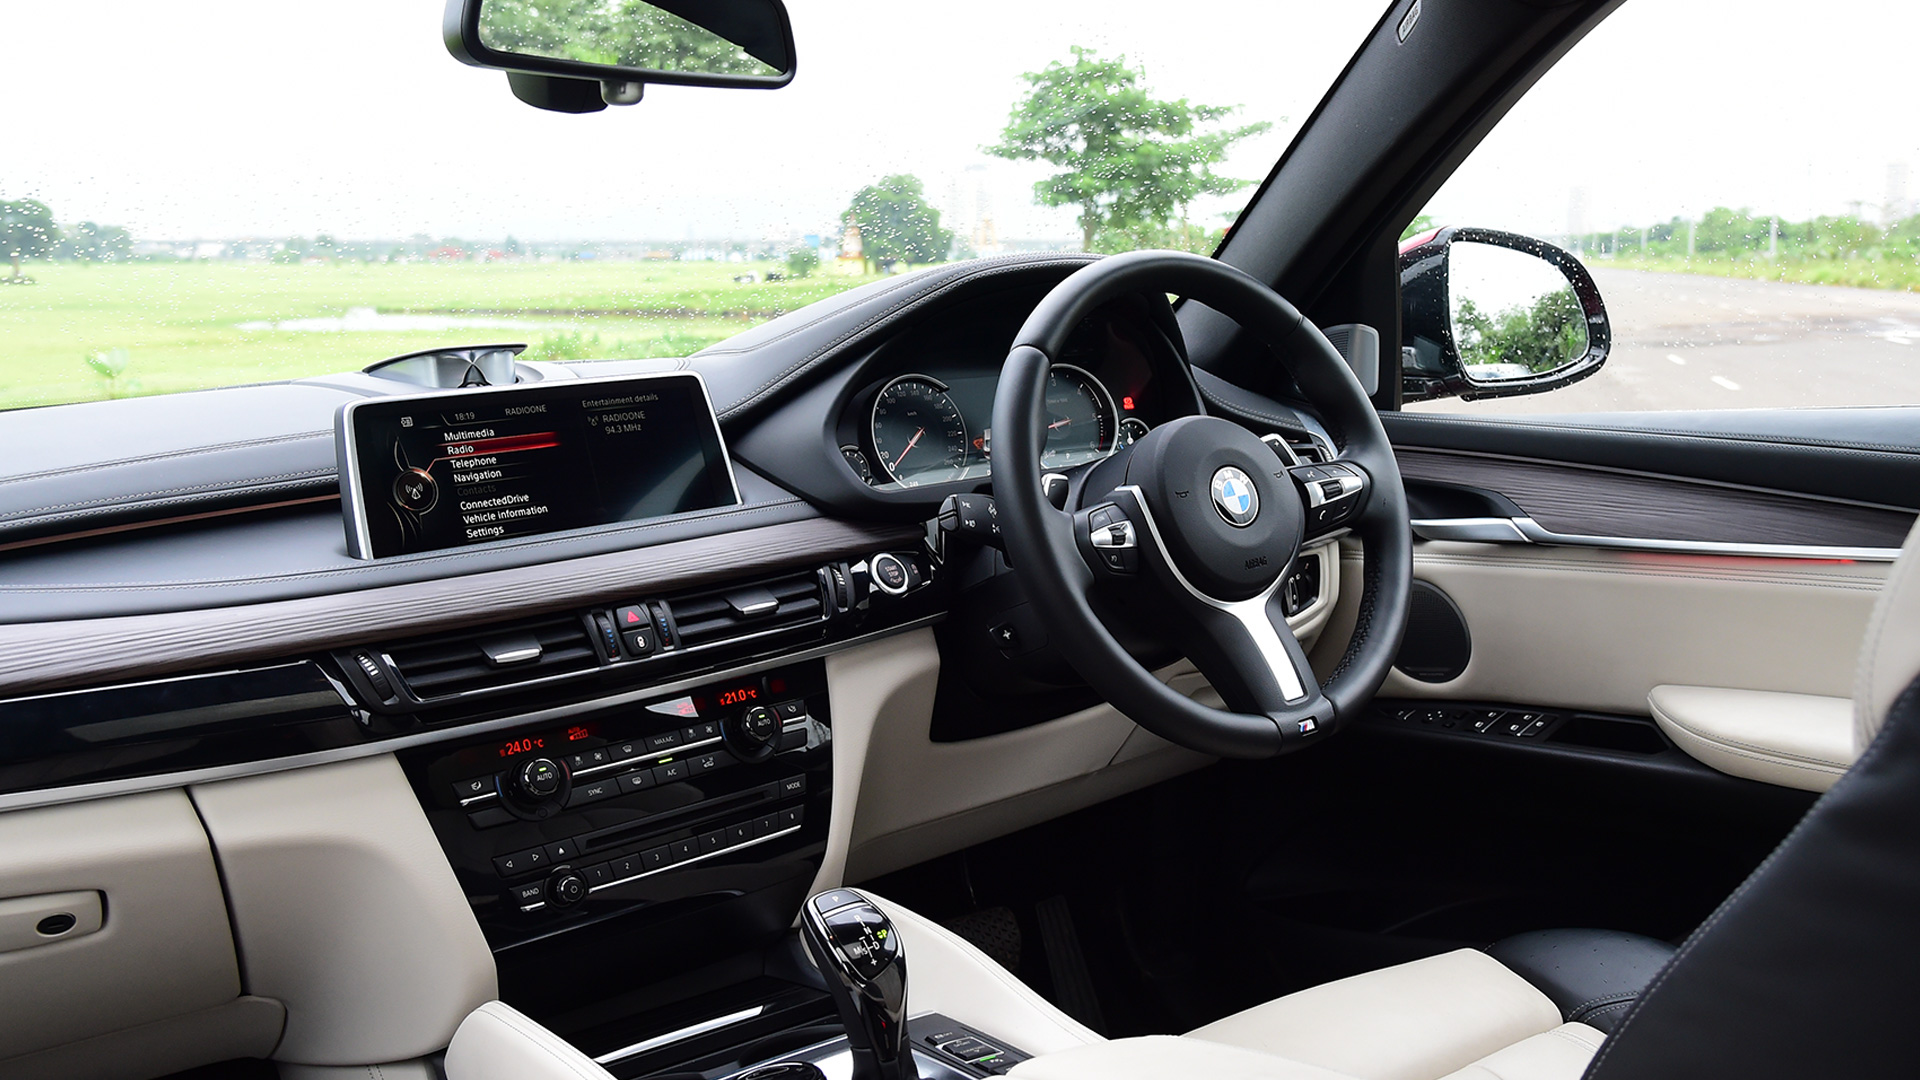 BMW X6 2015 xDrive40d M Sport Interior